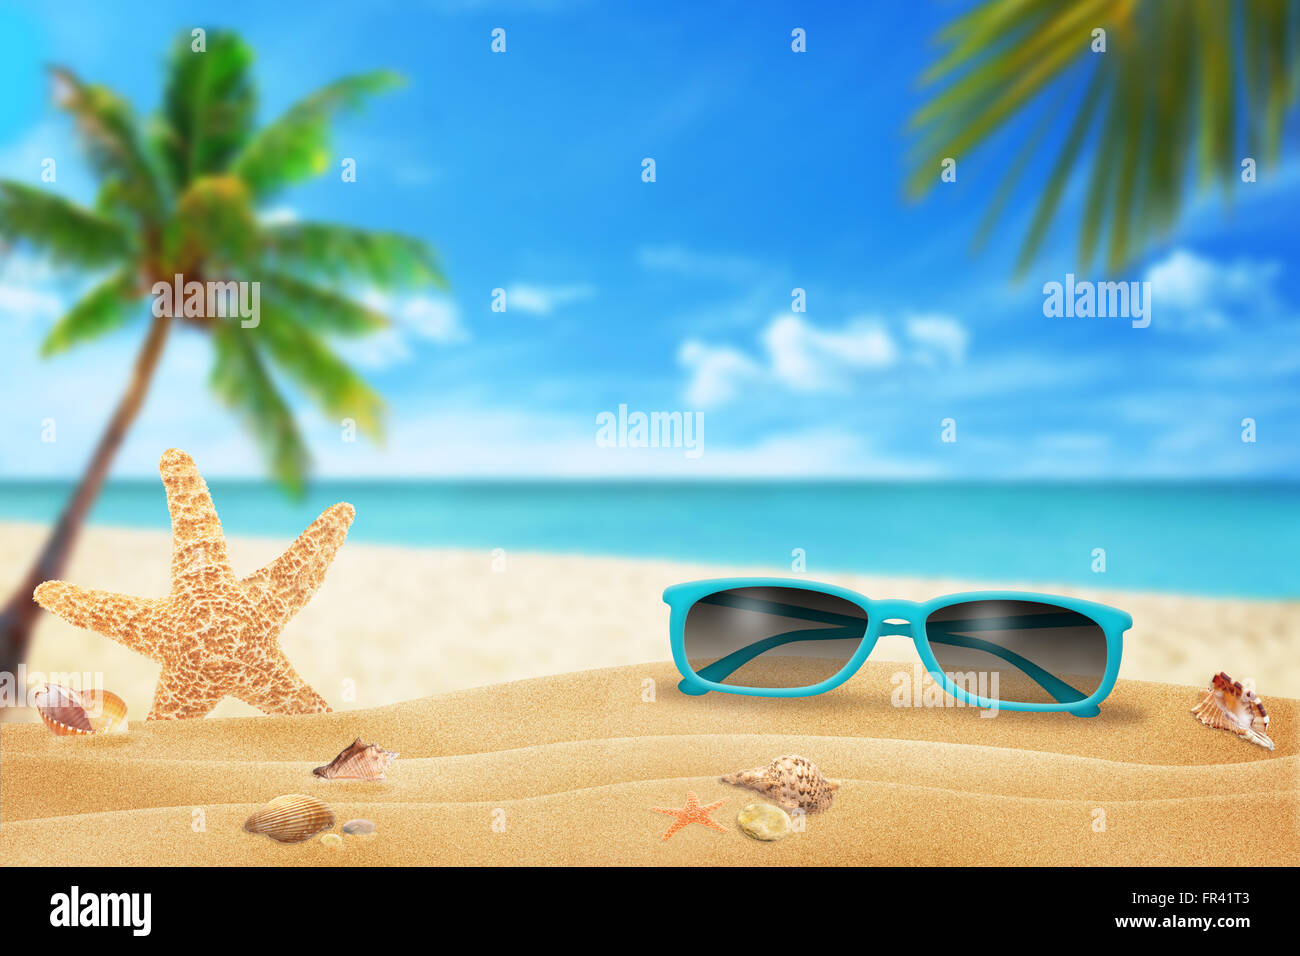 Occhiali da sole sulla spiaggia. Stella di mare e conchiglie sulla sabbia. La spiaggia e il mare con palm in background. Foto Stock